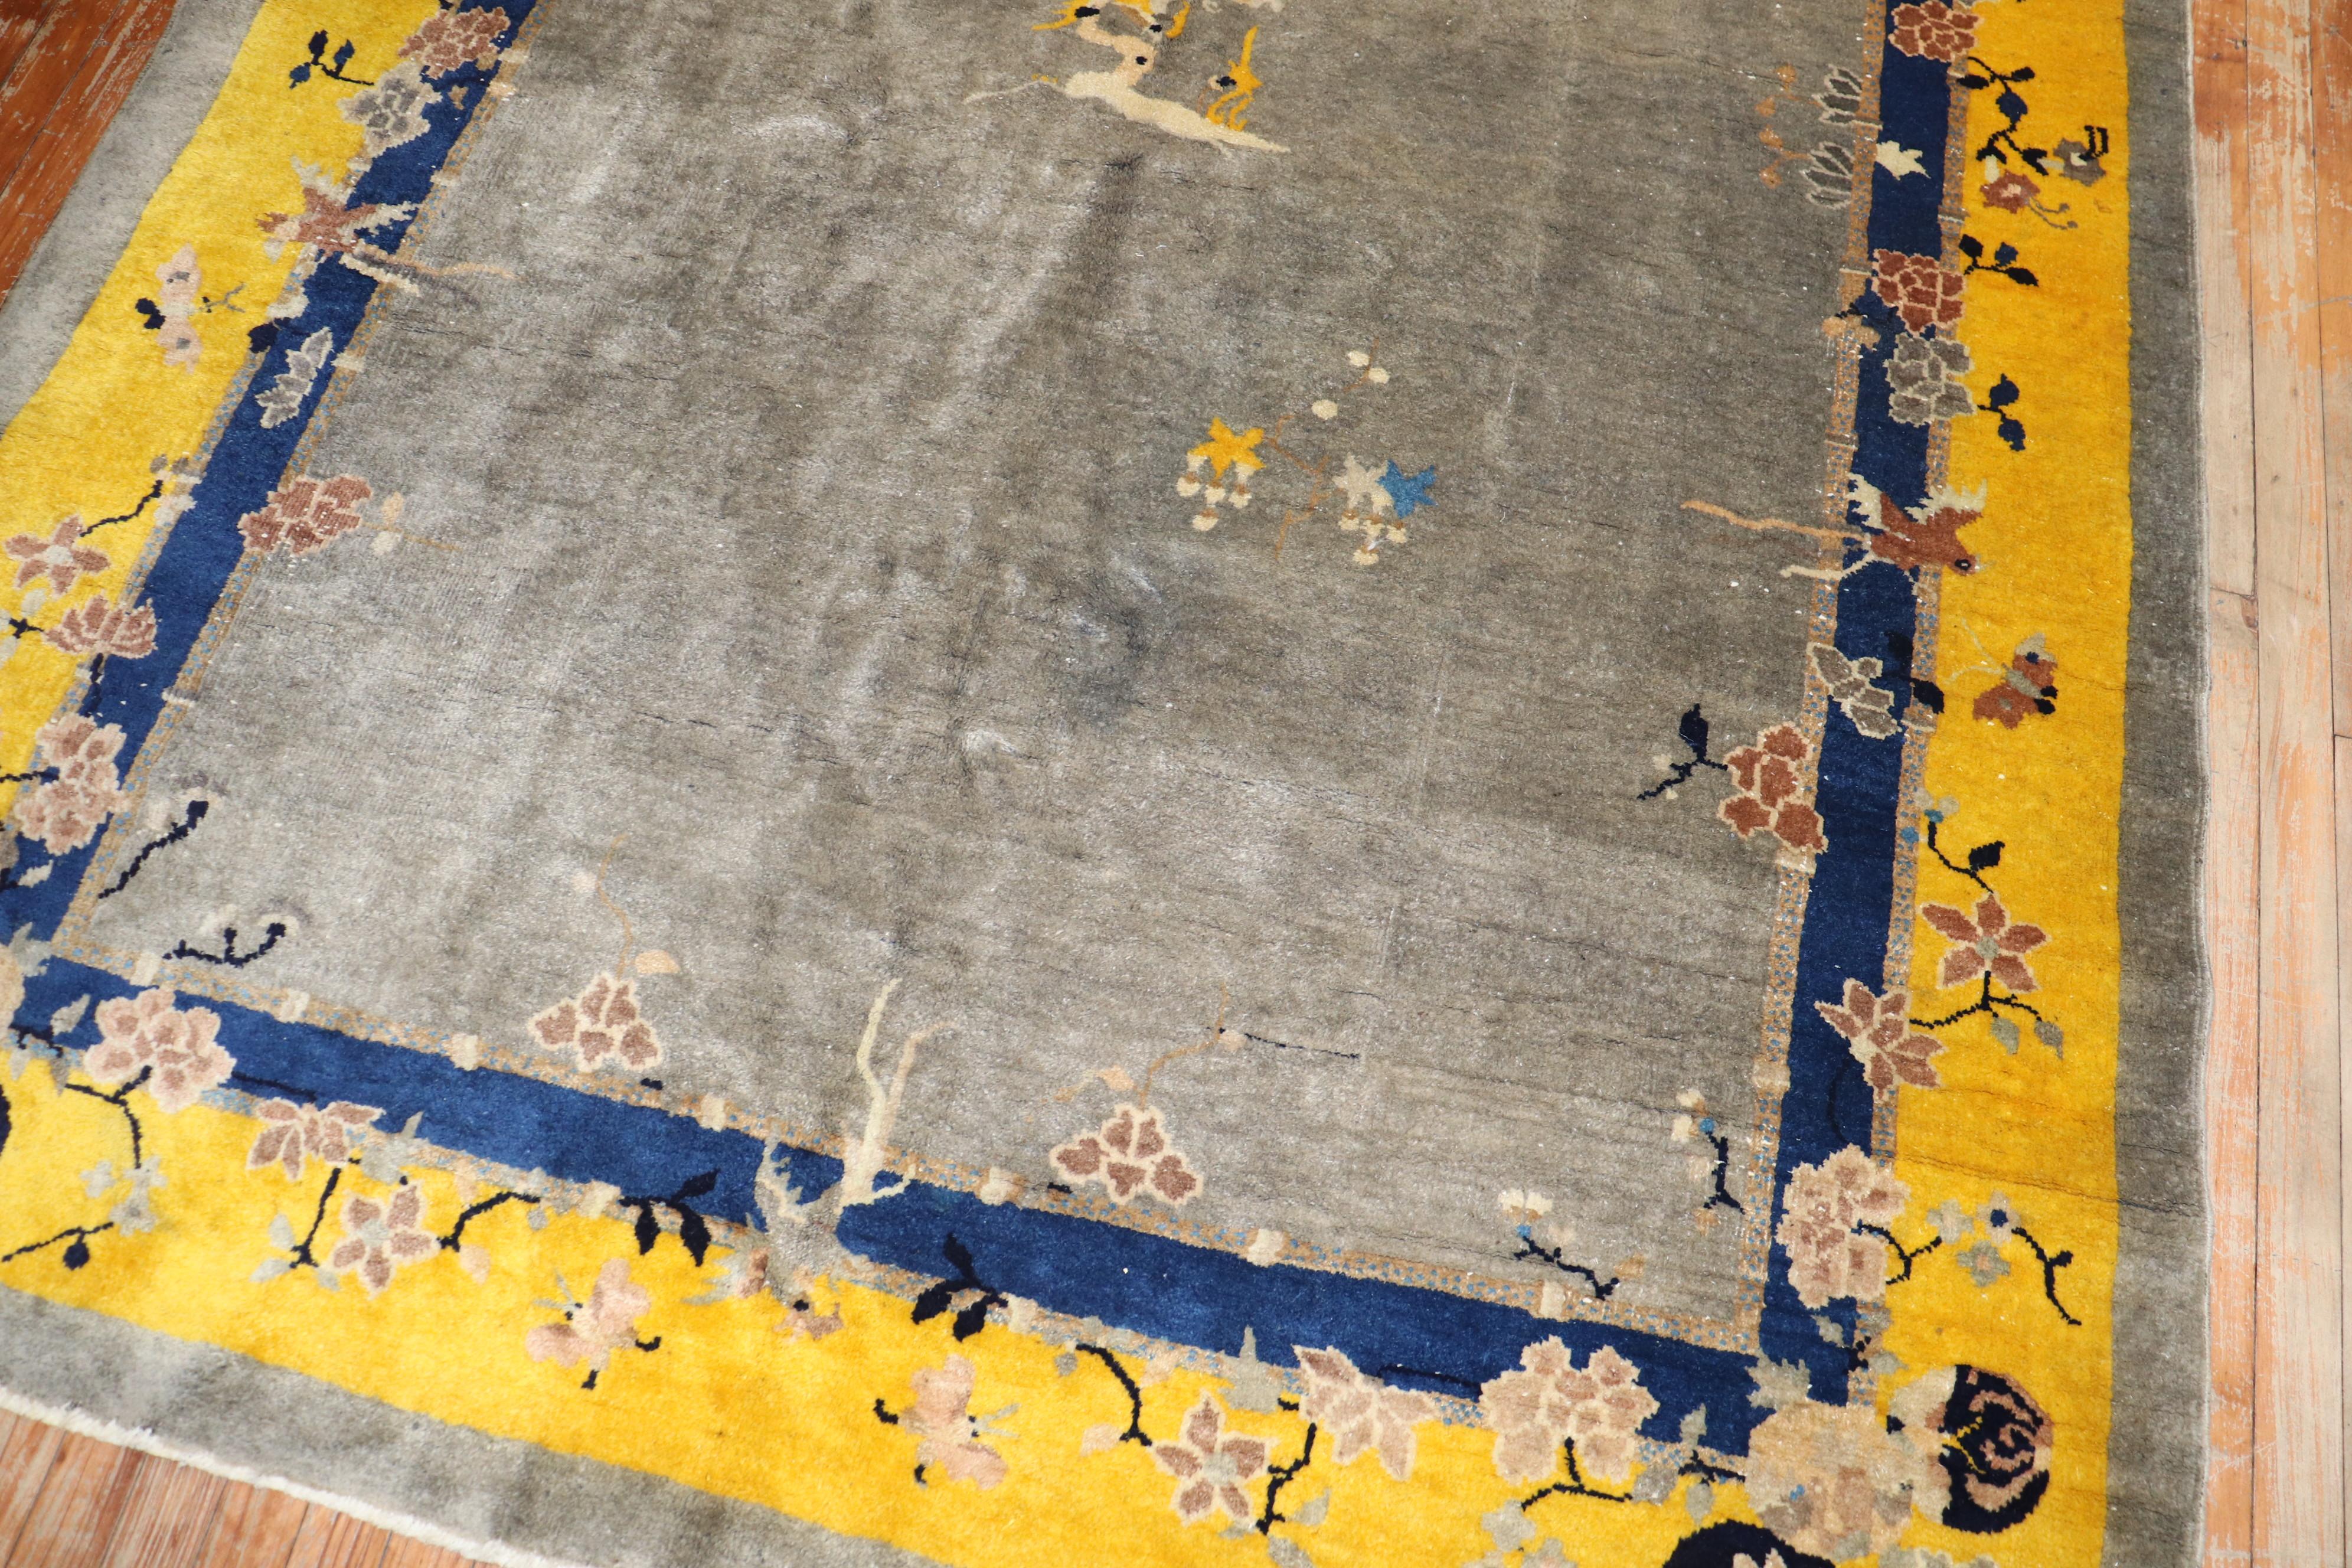 Tapis chinois de taille intermédiaire à poil plein, datant du deuxième quart du XXe siècle, avec une bordure jaune vif et un champ gris. Des couleurs très uniques et en excellent état.

Mesures : 6' x 8'7''.